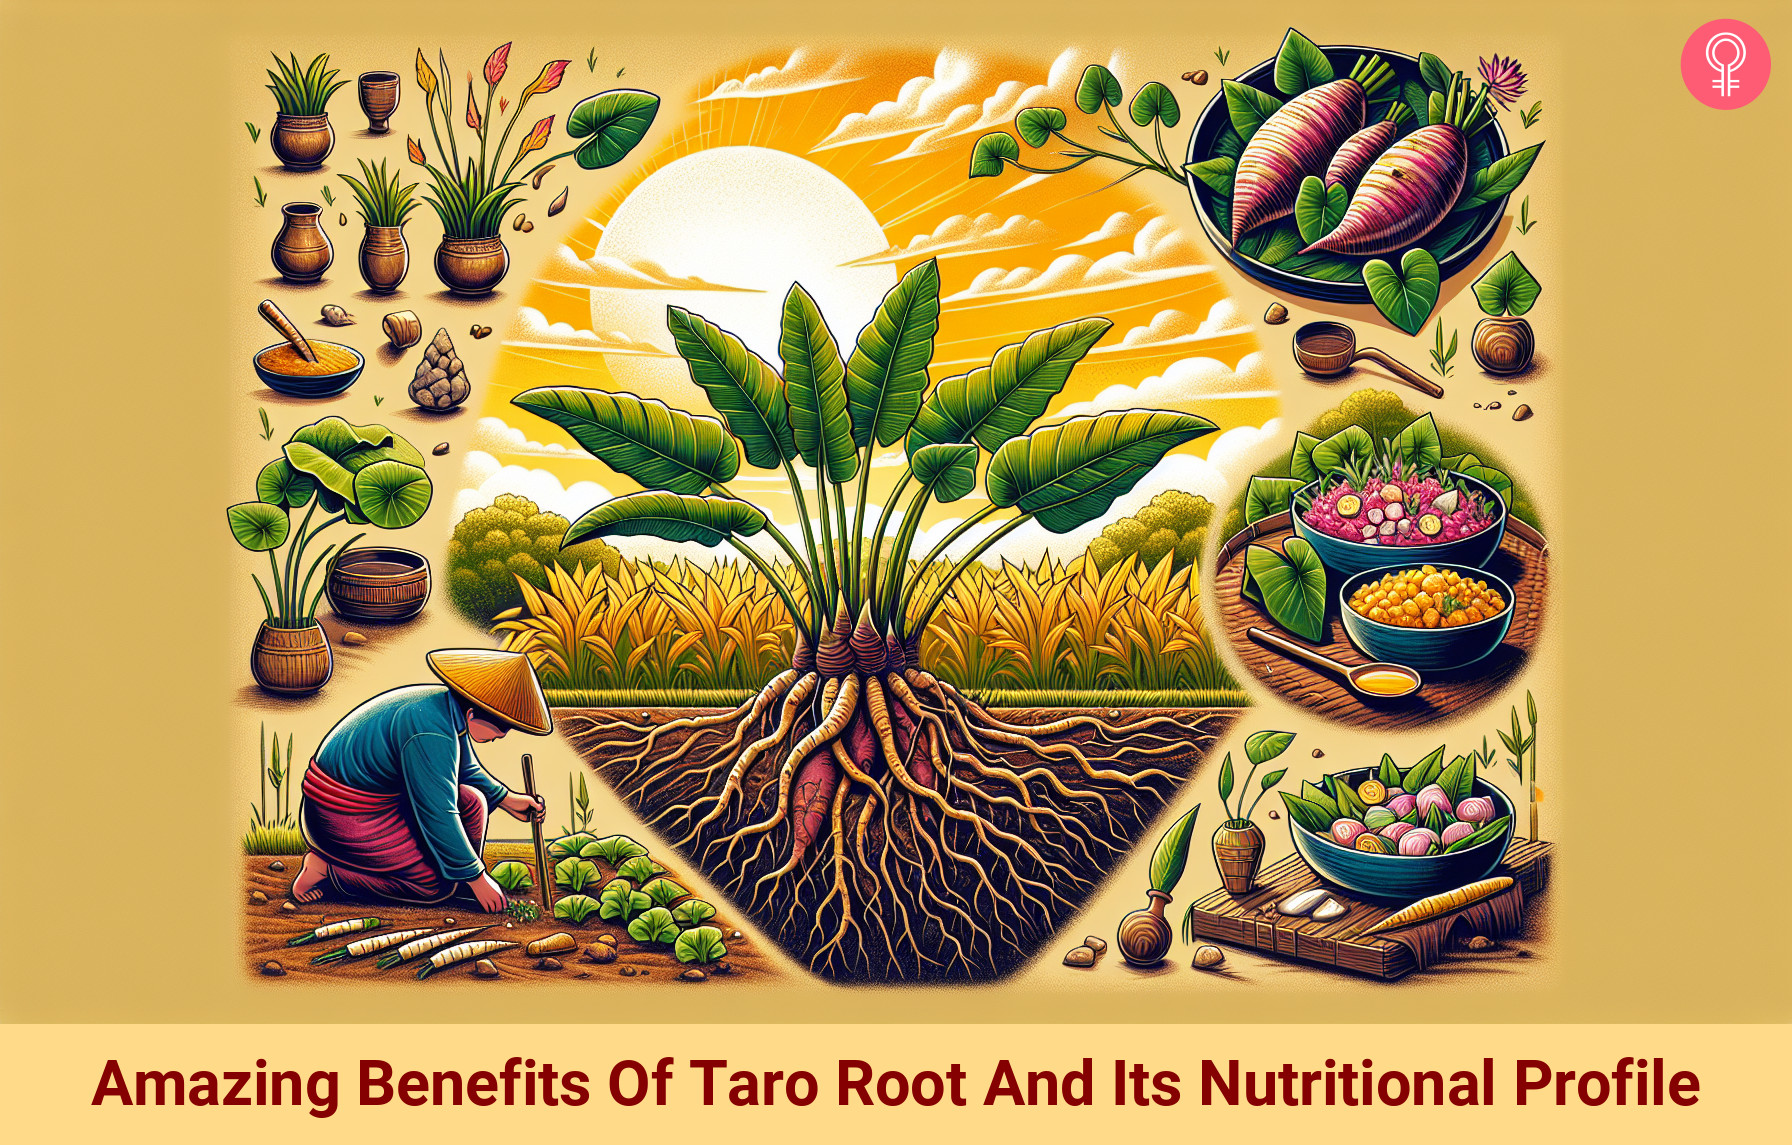 taro root_illustration